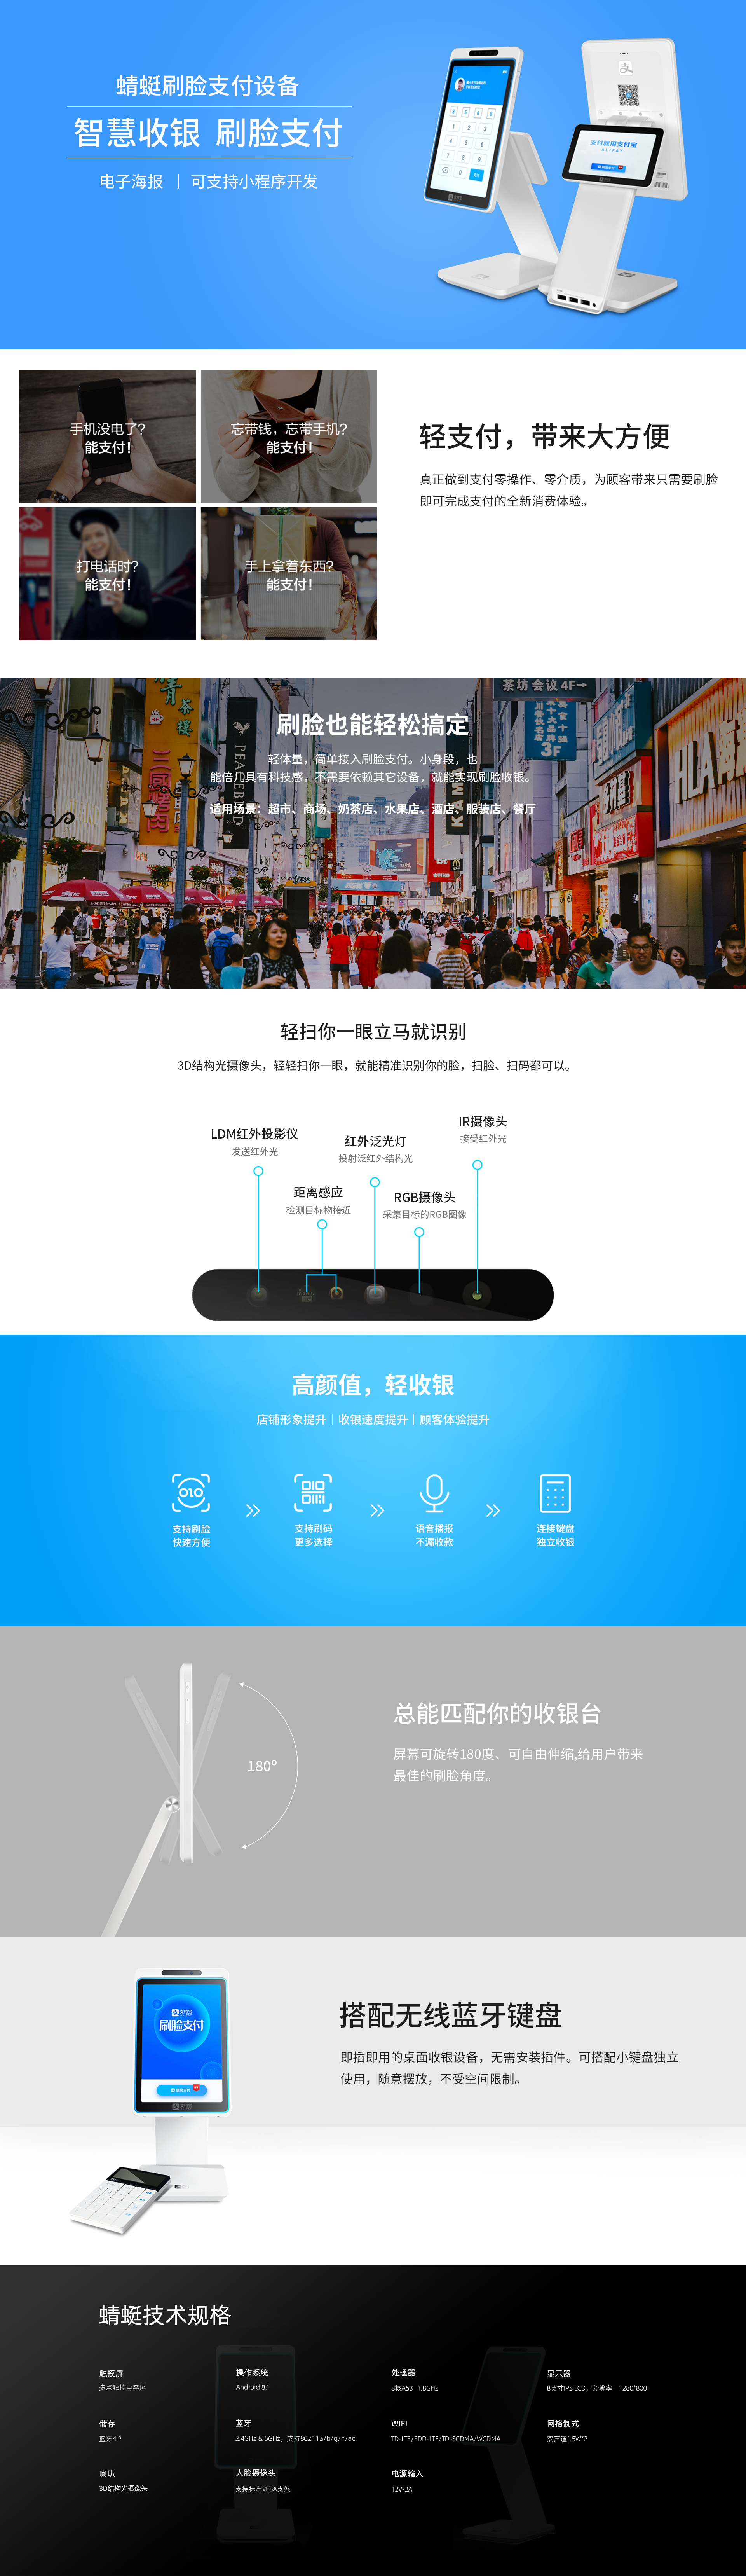 尊龙凯时·(中国)app官方网站_产品6170